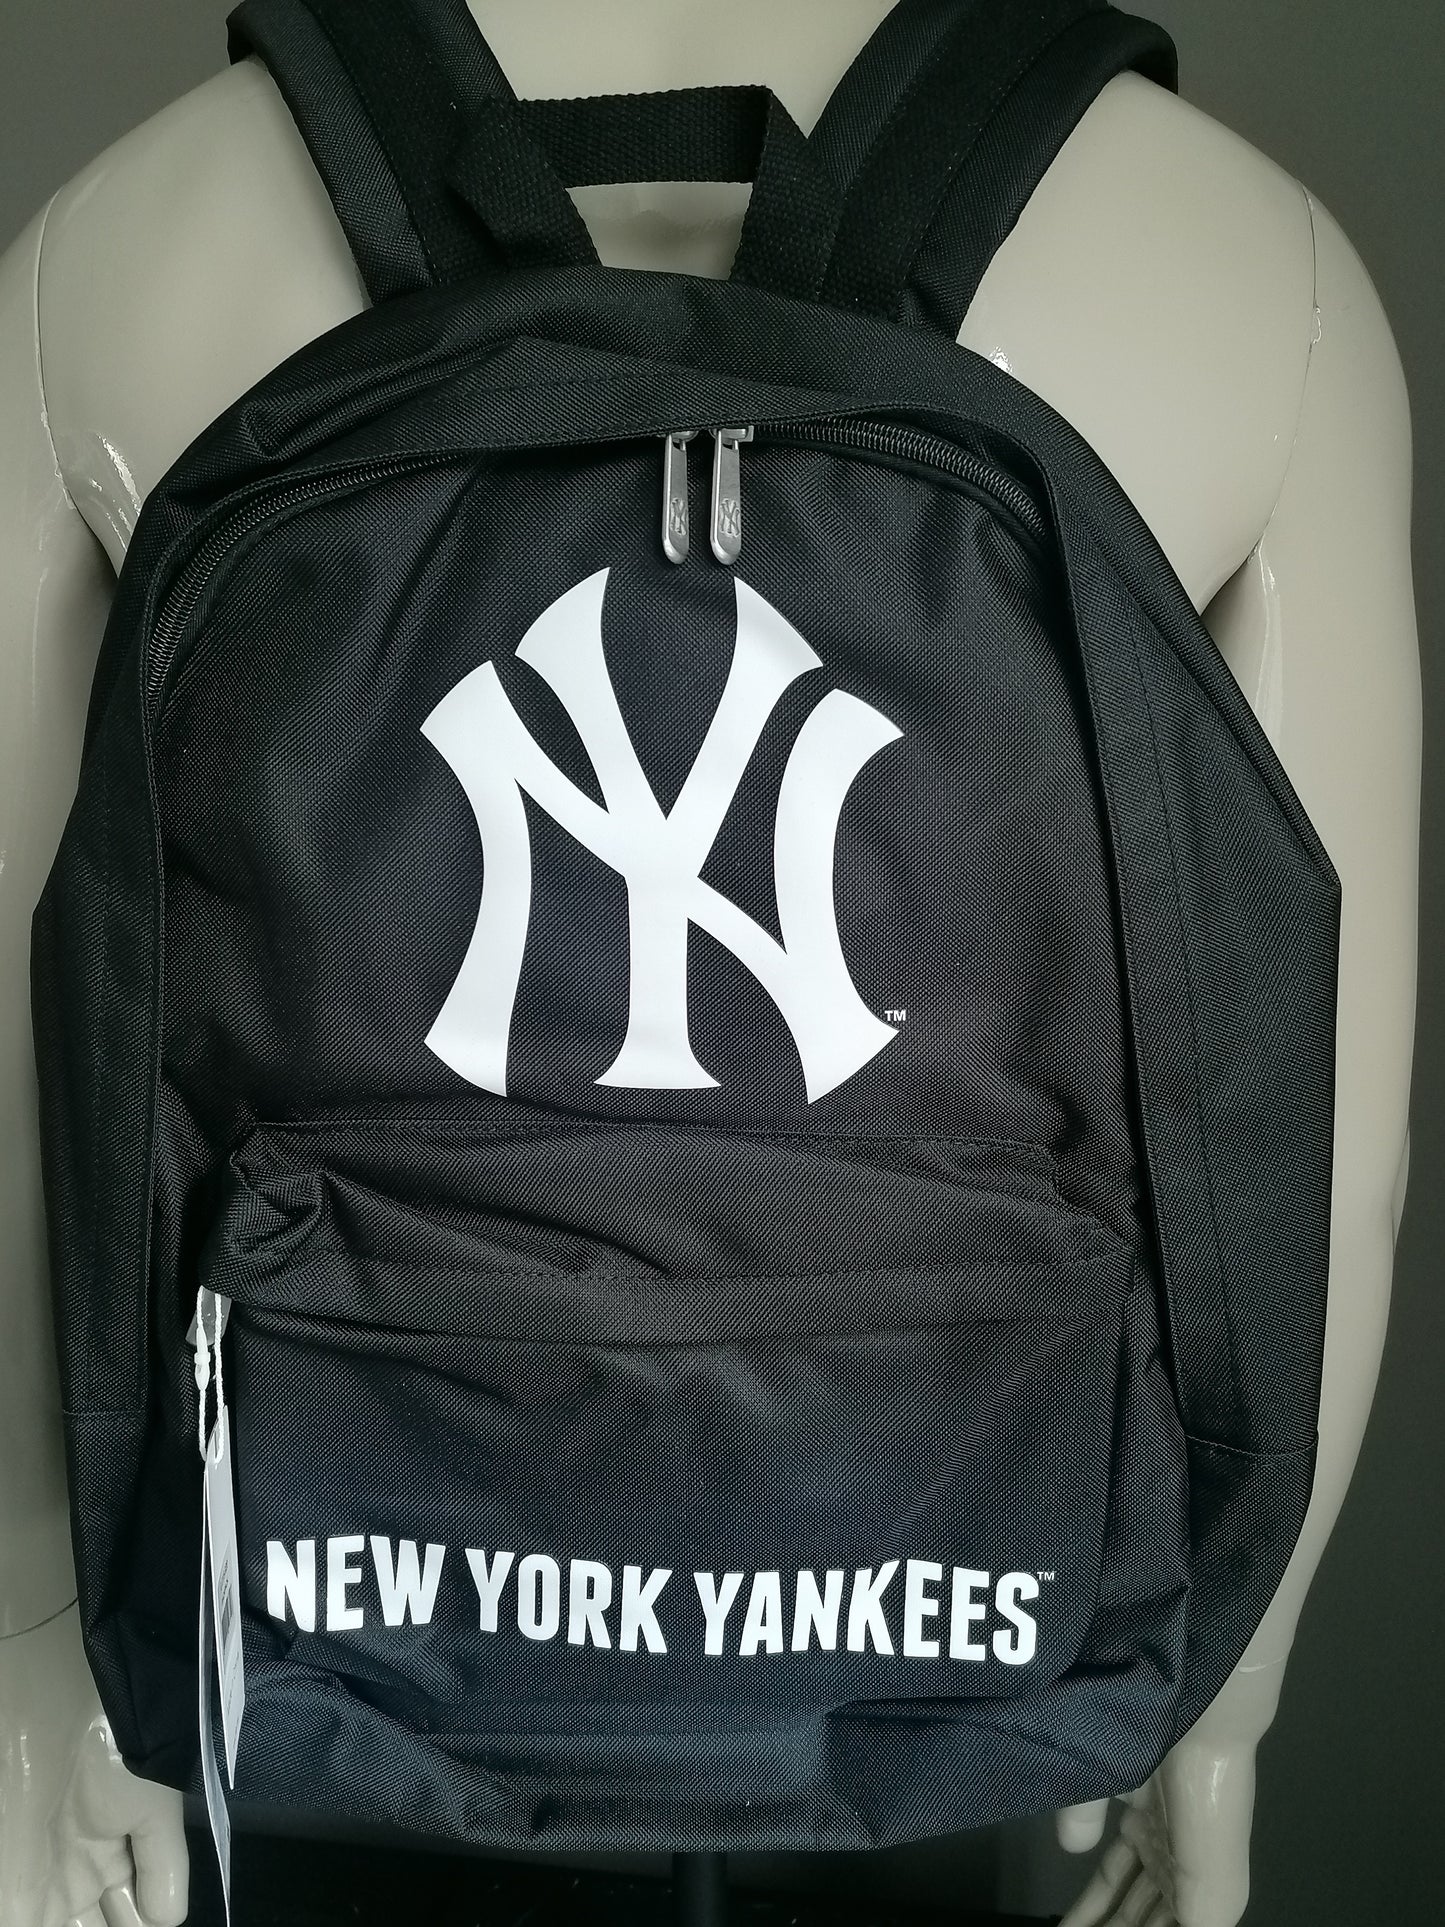 Major League Baseball Original New Yorkes Backpack / Rucksack. Schwarz und weiß. Doppelte innere Tasche.